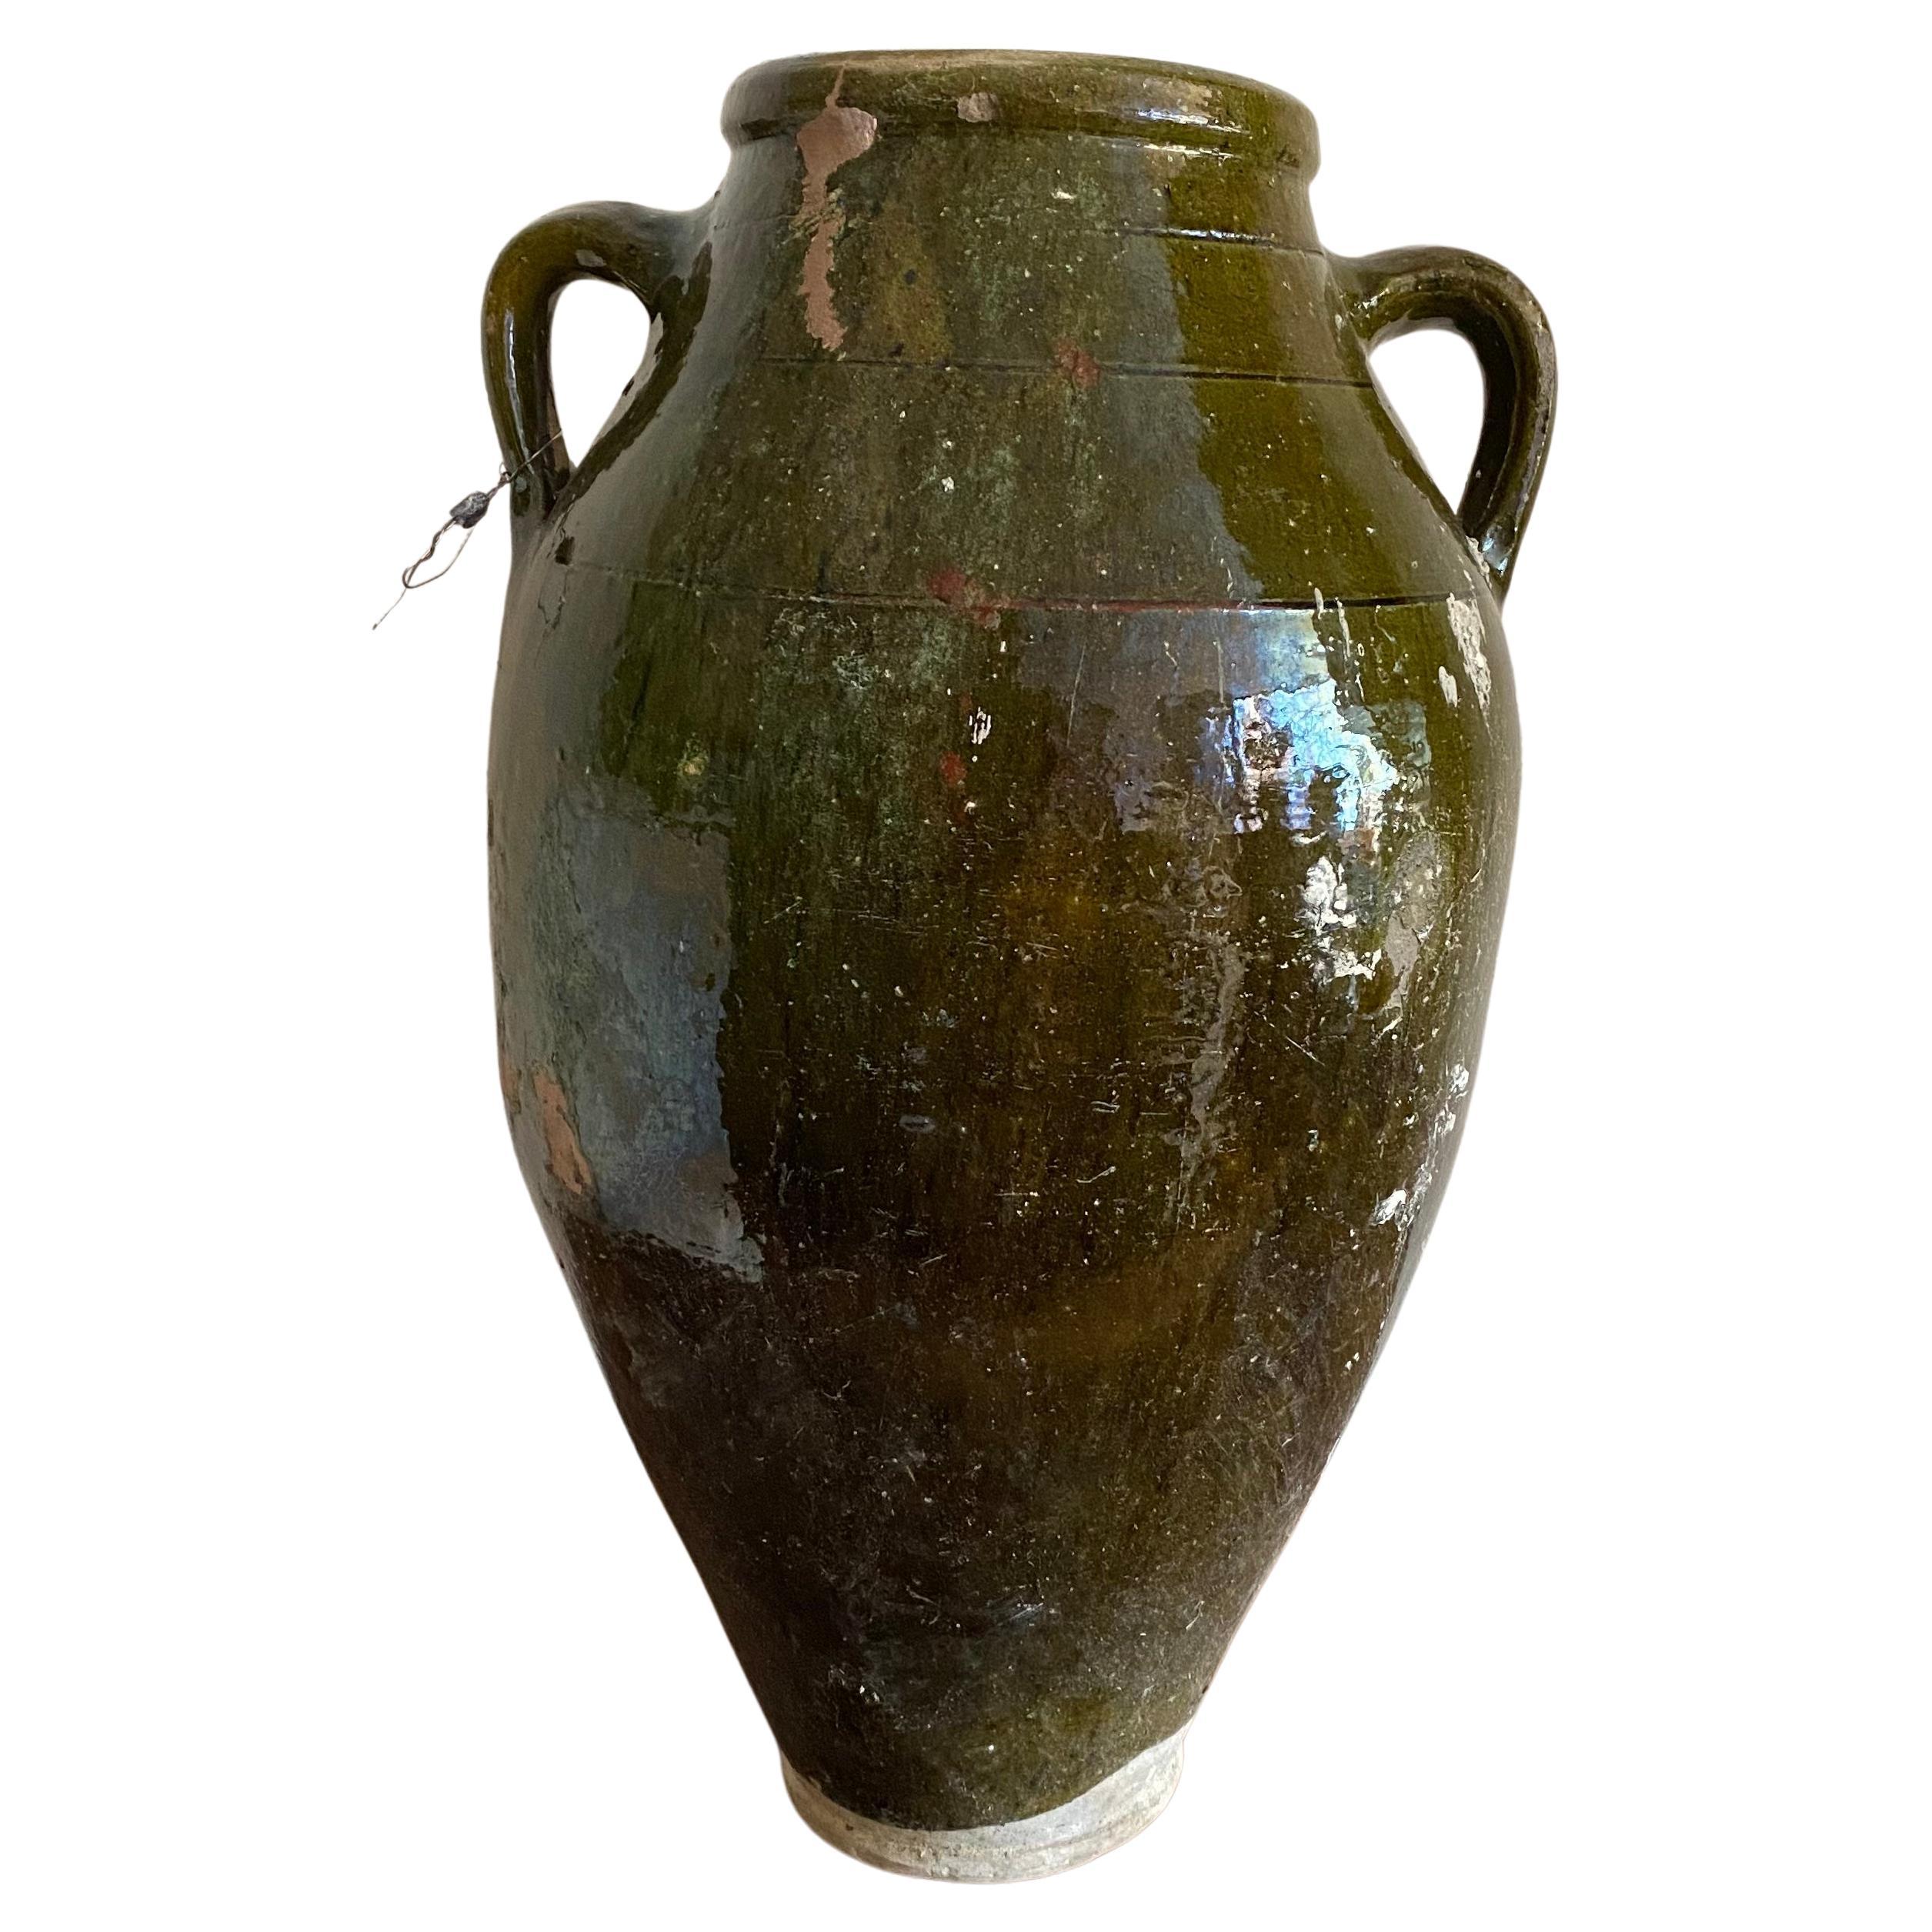 Chunky Green Glazed Ceramic Rustic Urn Olive Jar Vase Plant Pot Crackled Large 